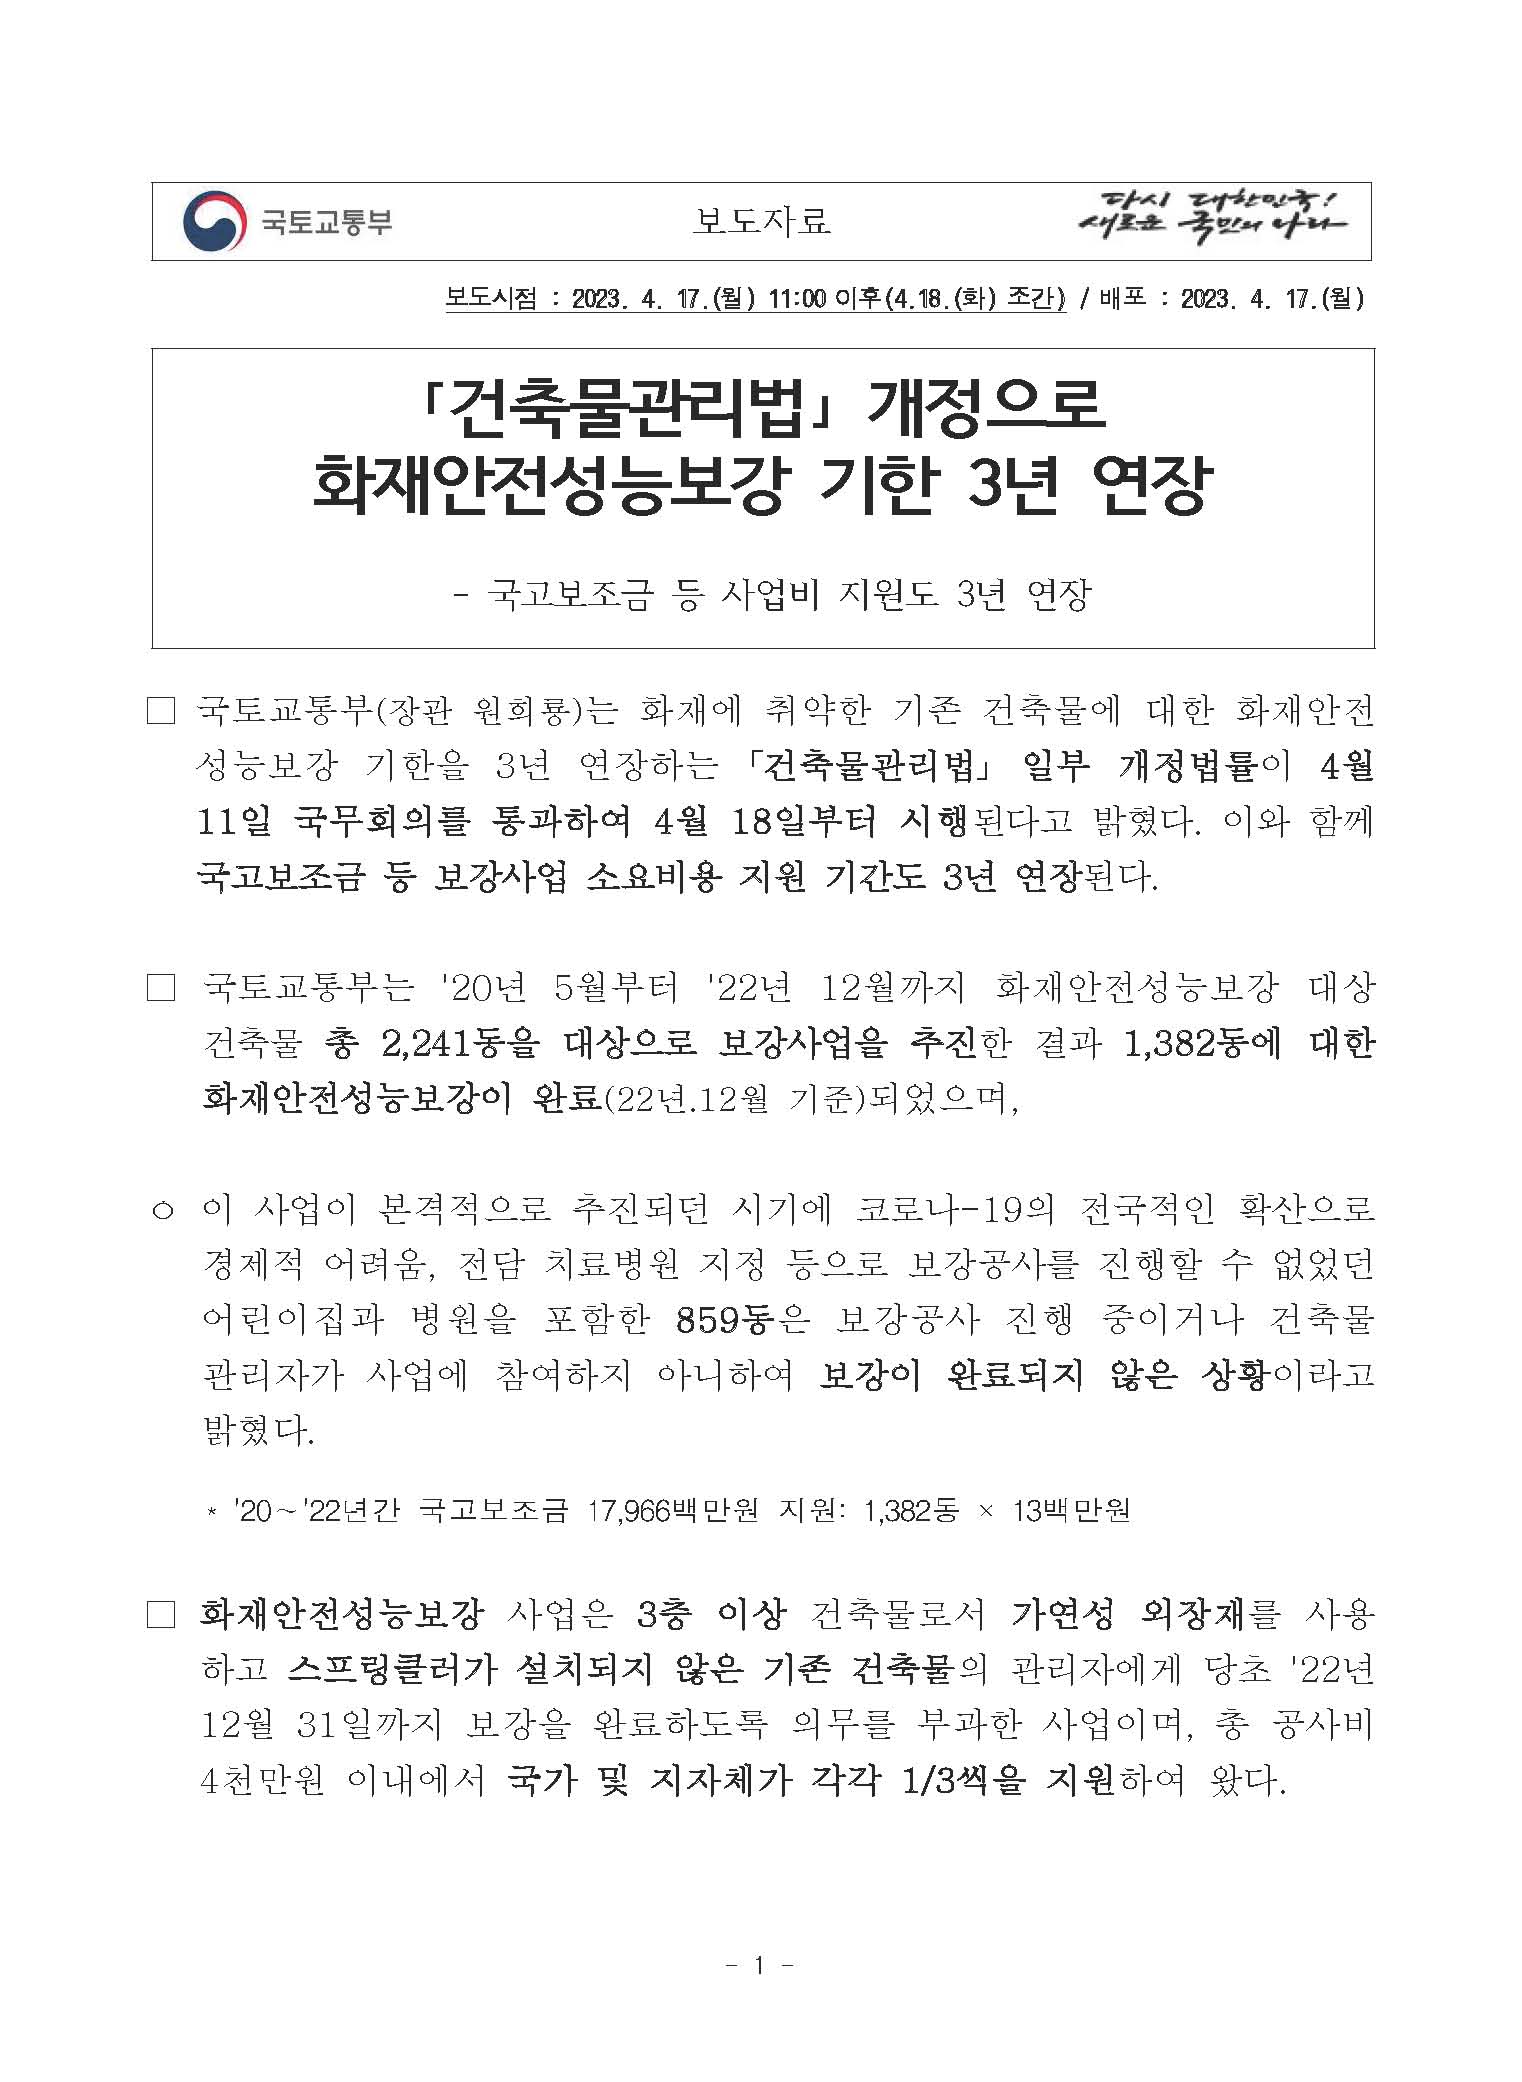 ｢건축물관리법｣ 개정으로 화재안전성능보강 기한 3년 연장 - 송창영 한국안전원